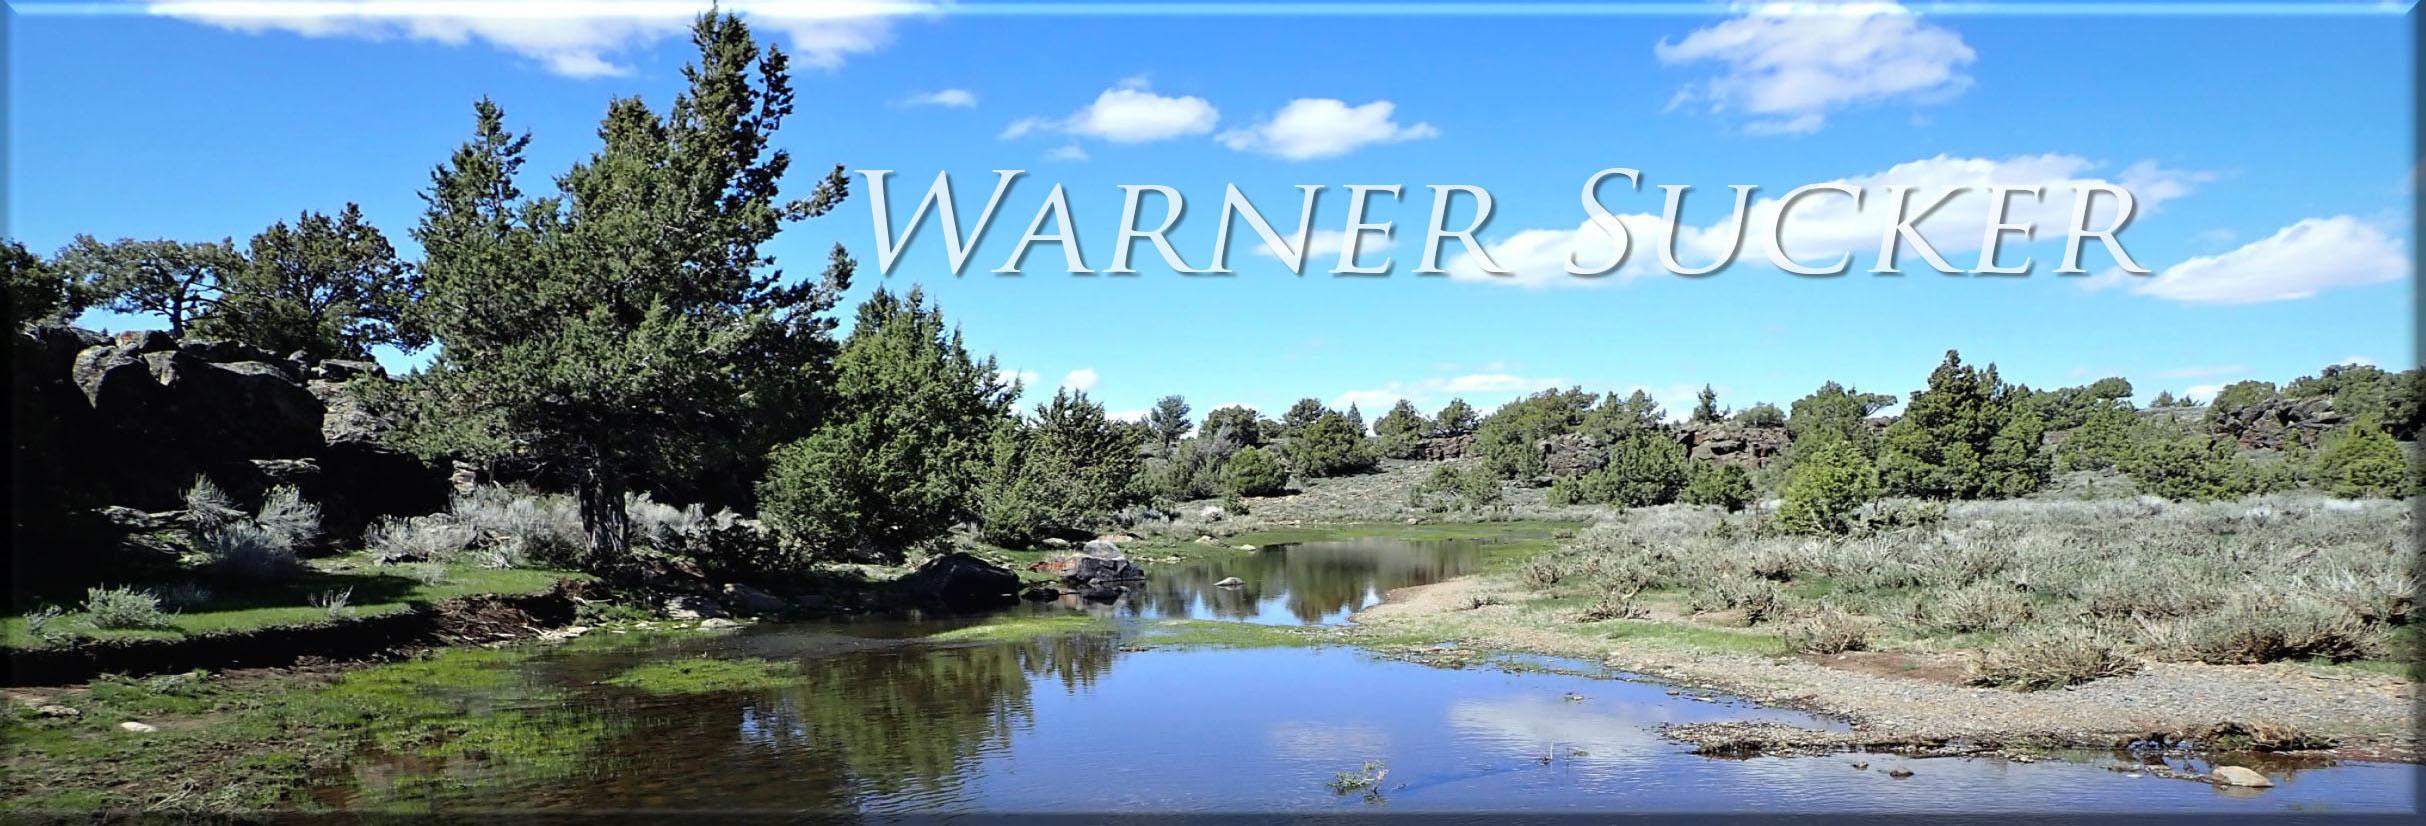 Warner Sucker banner